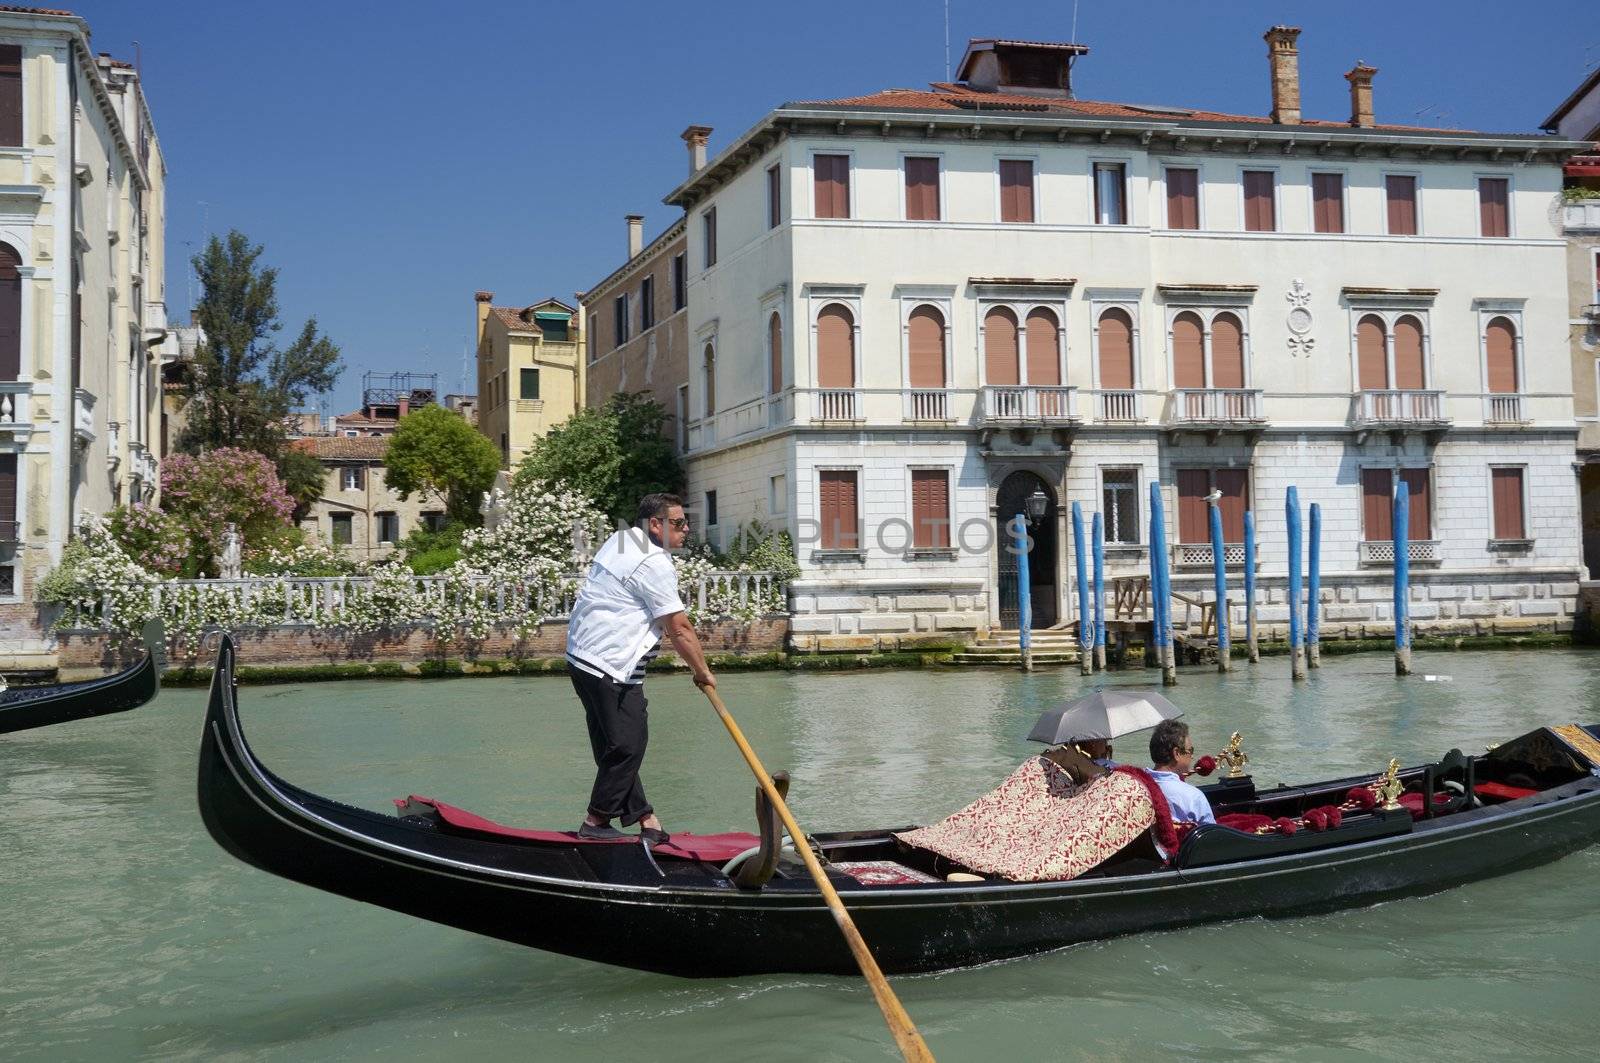 VENICE, VENETO, ITALY - CIRCA MAY 2011: Gondolier with his gondola on Grand Canal. circa May 2011 in Venice, Veneto, Italy